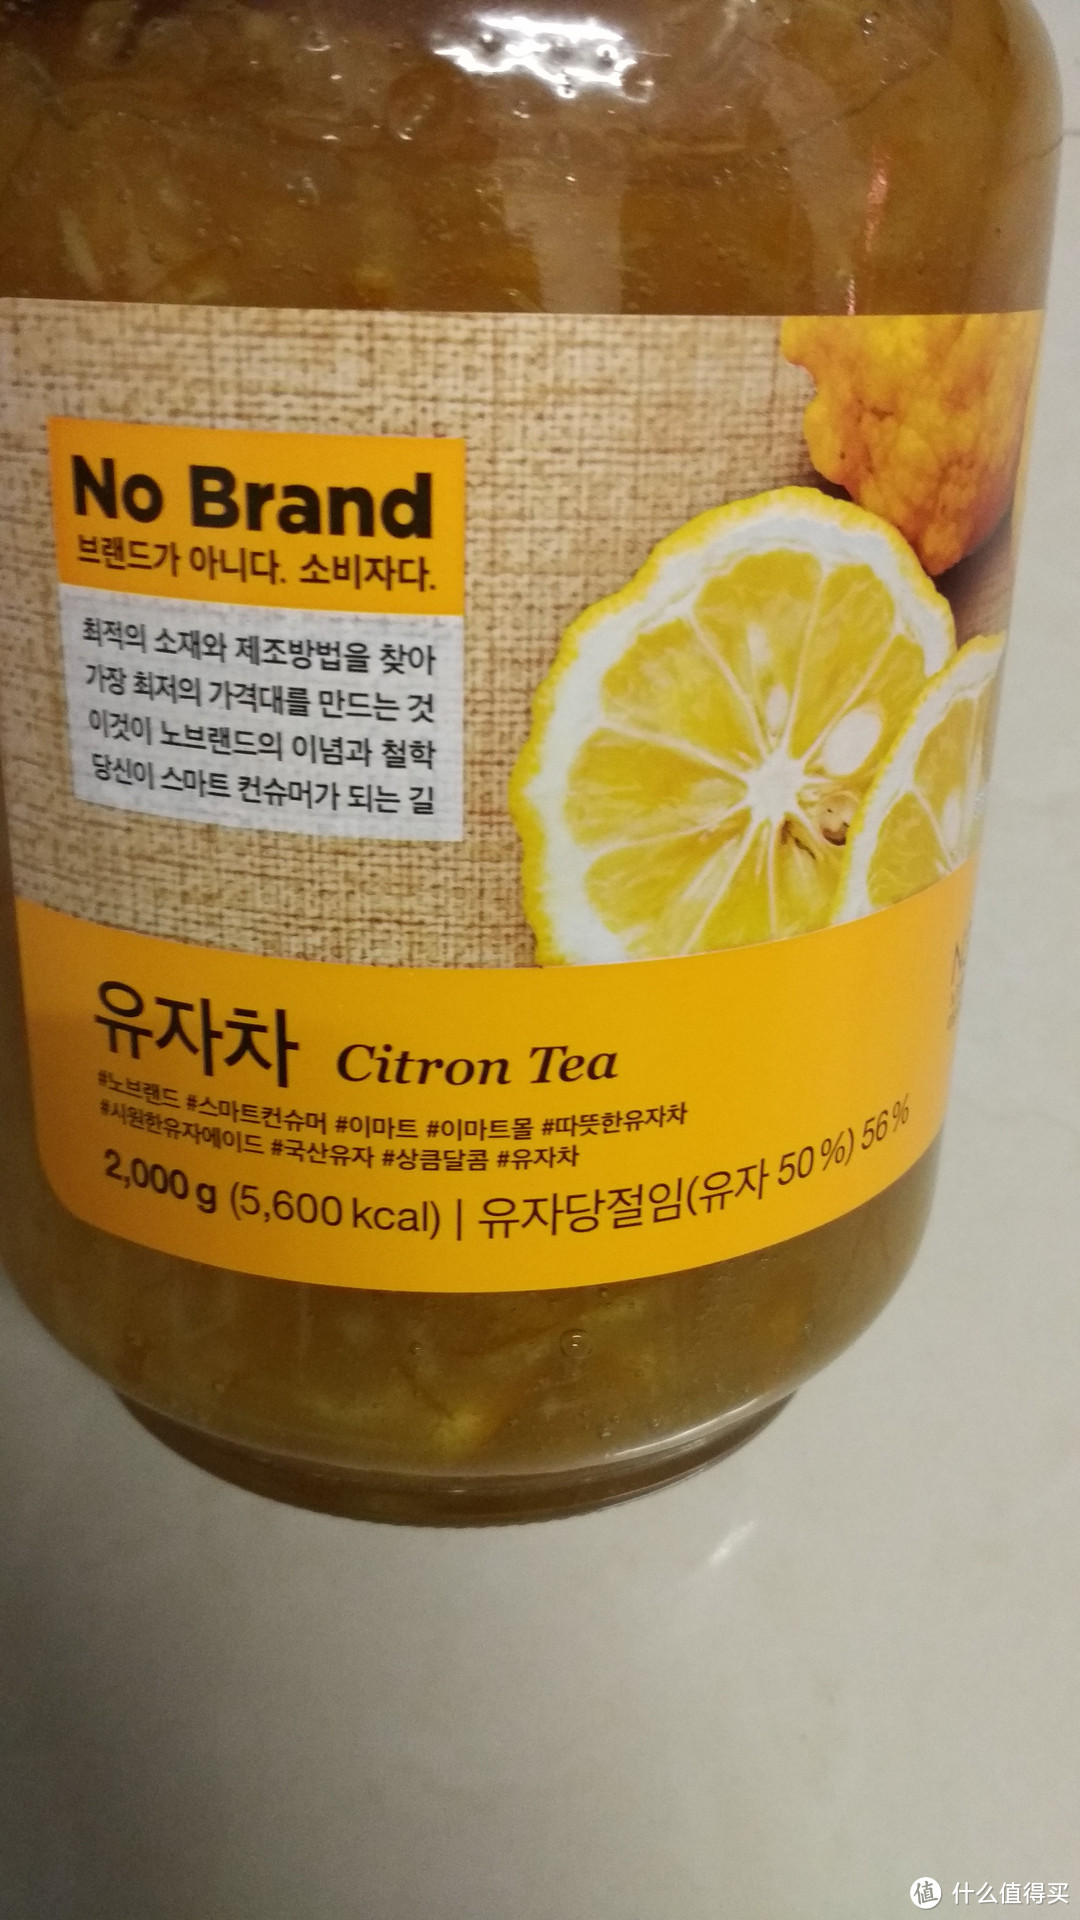 NO BRAND：一款无品牌的韩国蜂蜜柚子茶和曲奇饼干